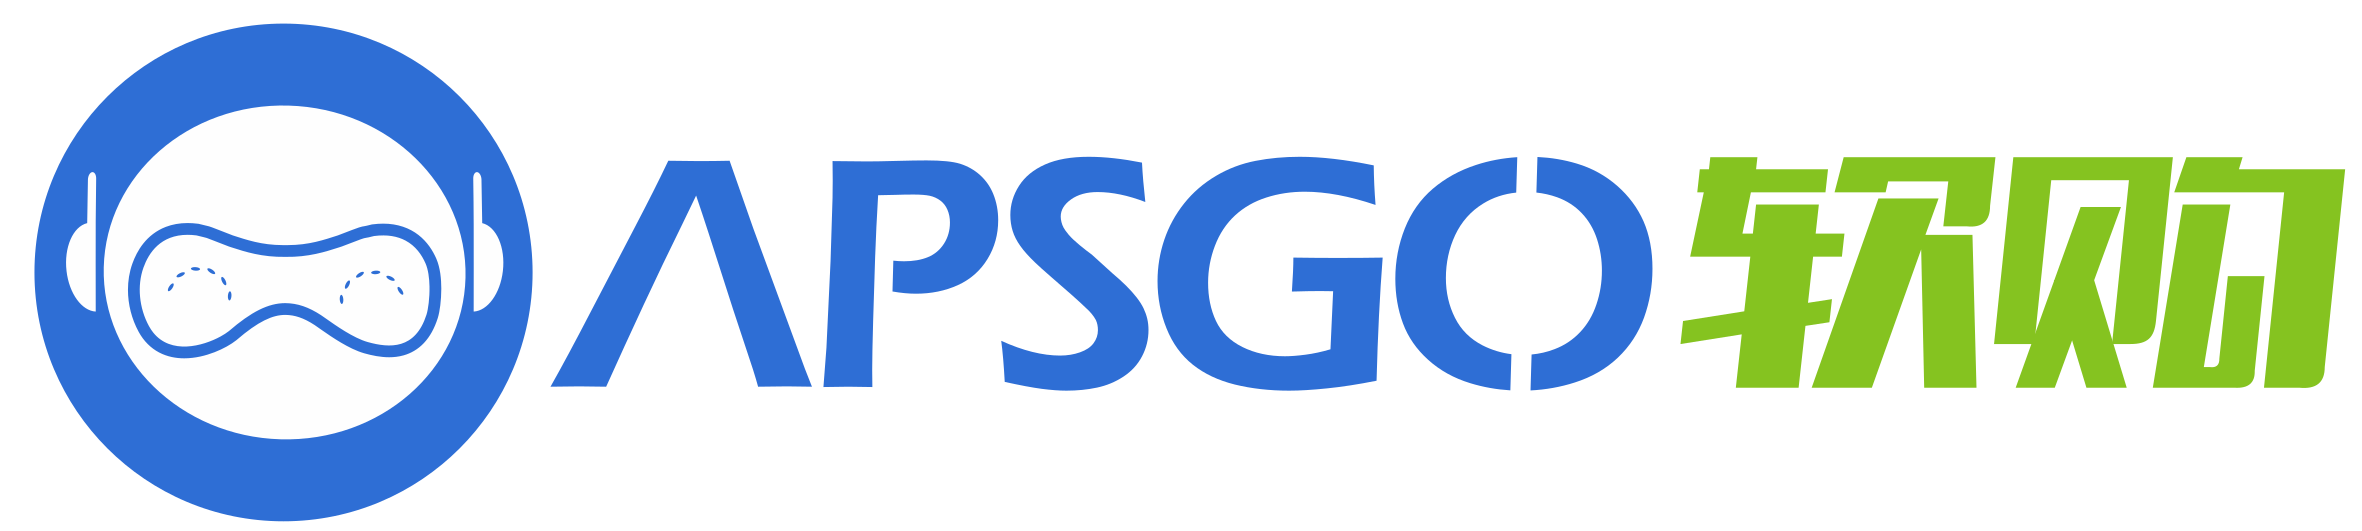 apsgo-logo.png